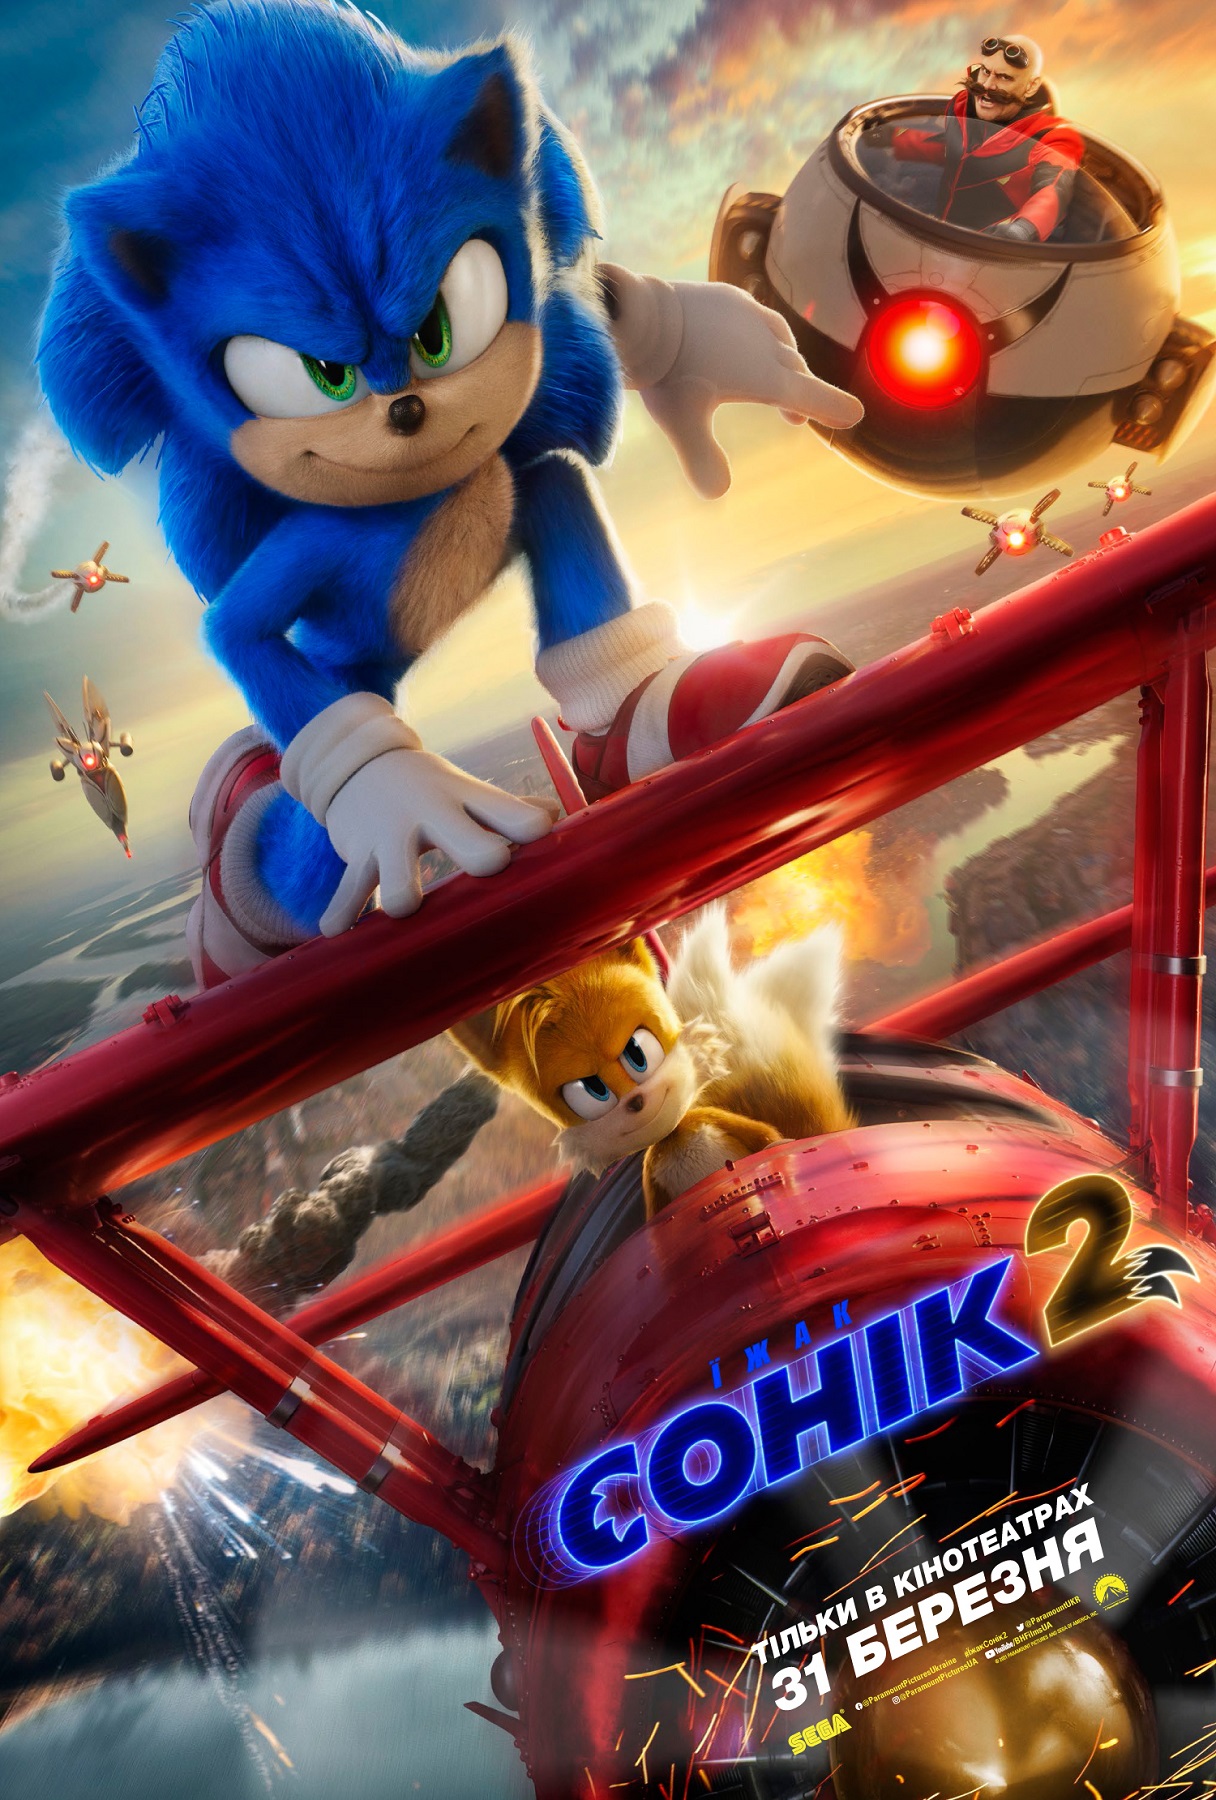 Їжак Сонік 2 / Sonic the Hedgehog 2 (2022) WEBRip 1080p Ukr/Eng | Sub Eng